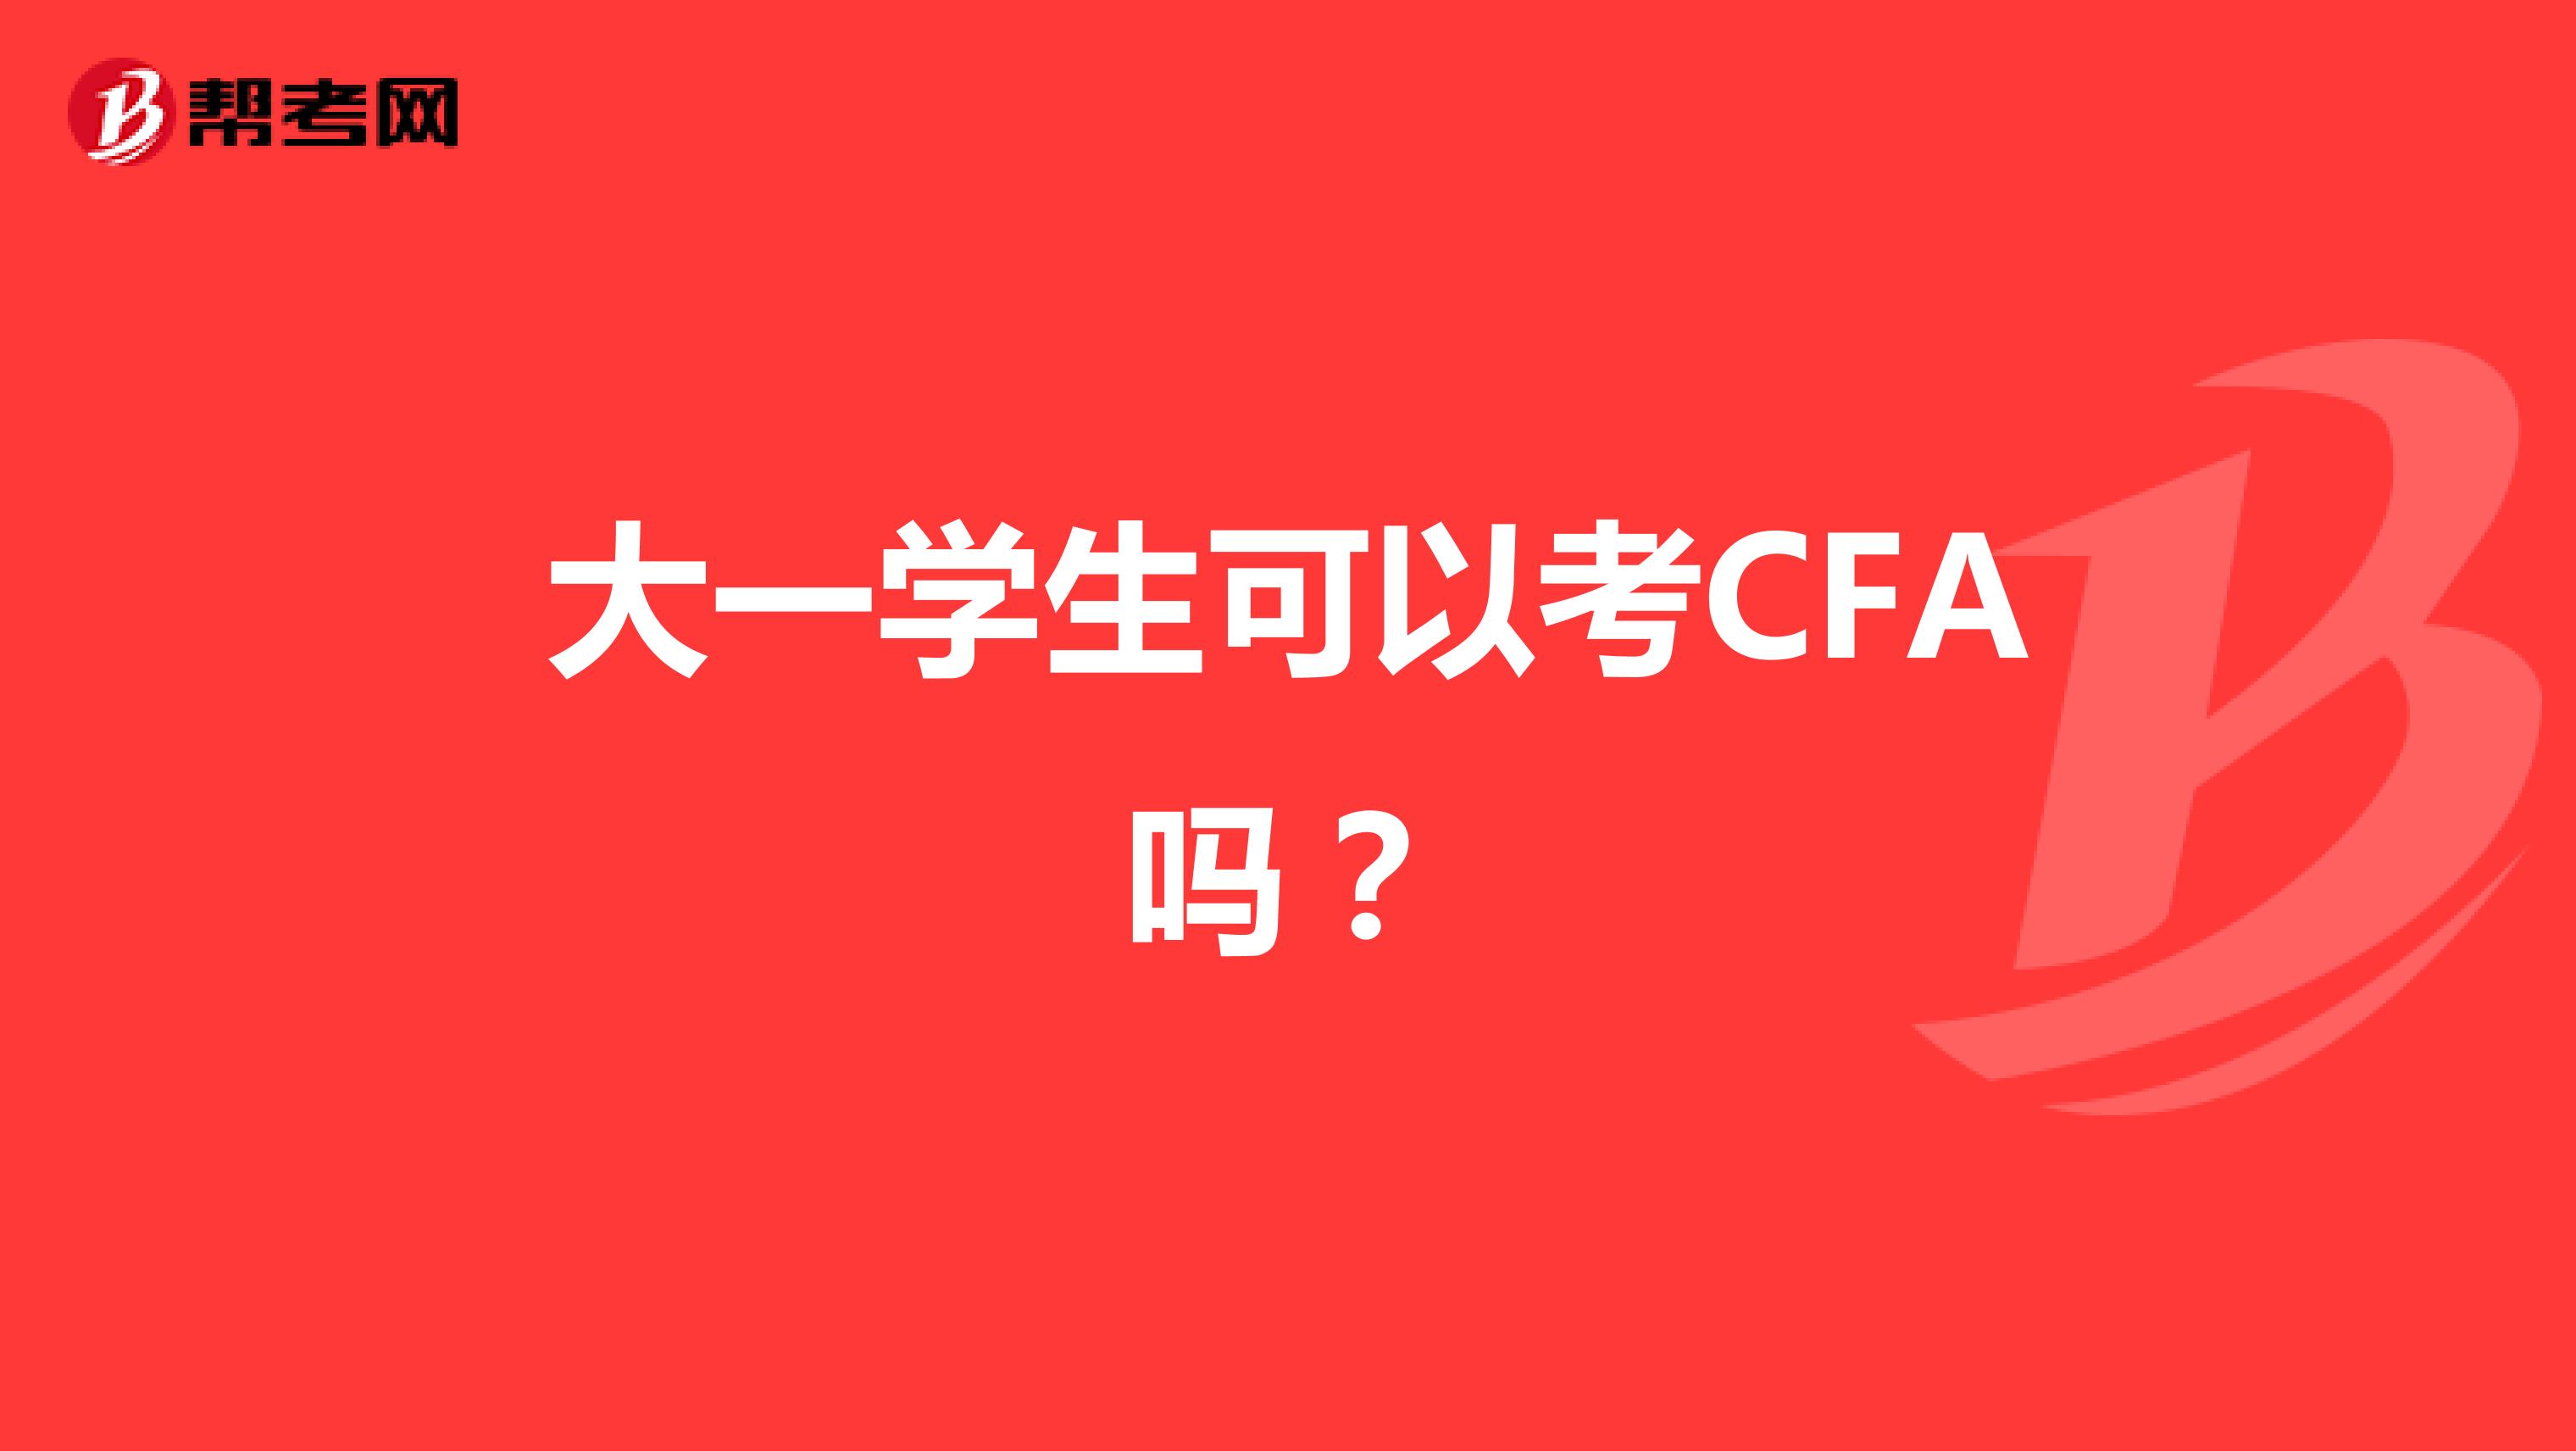 大一学生可以考CFA吗？